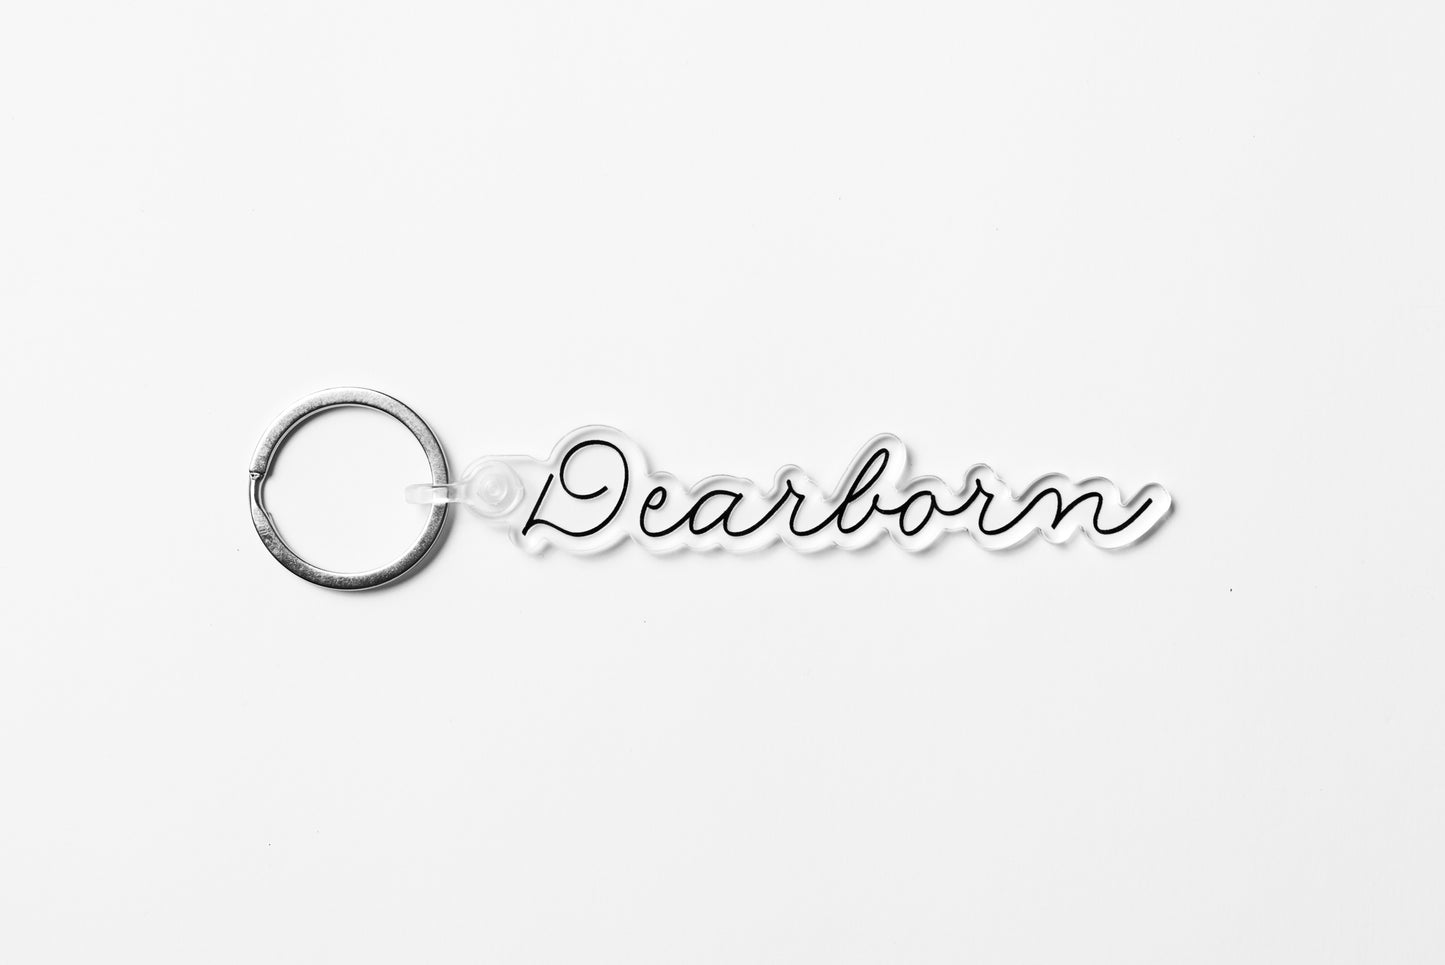 Dearborn Keychain